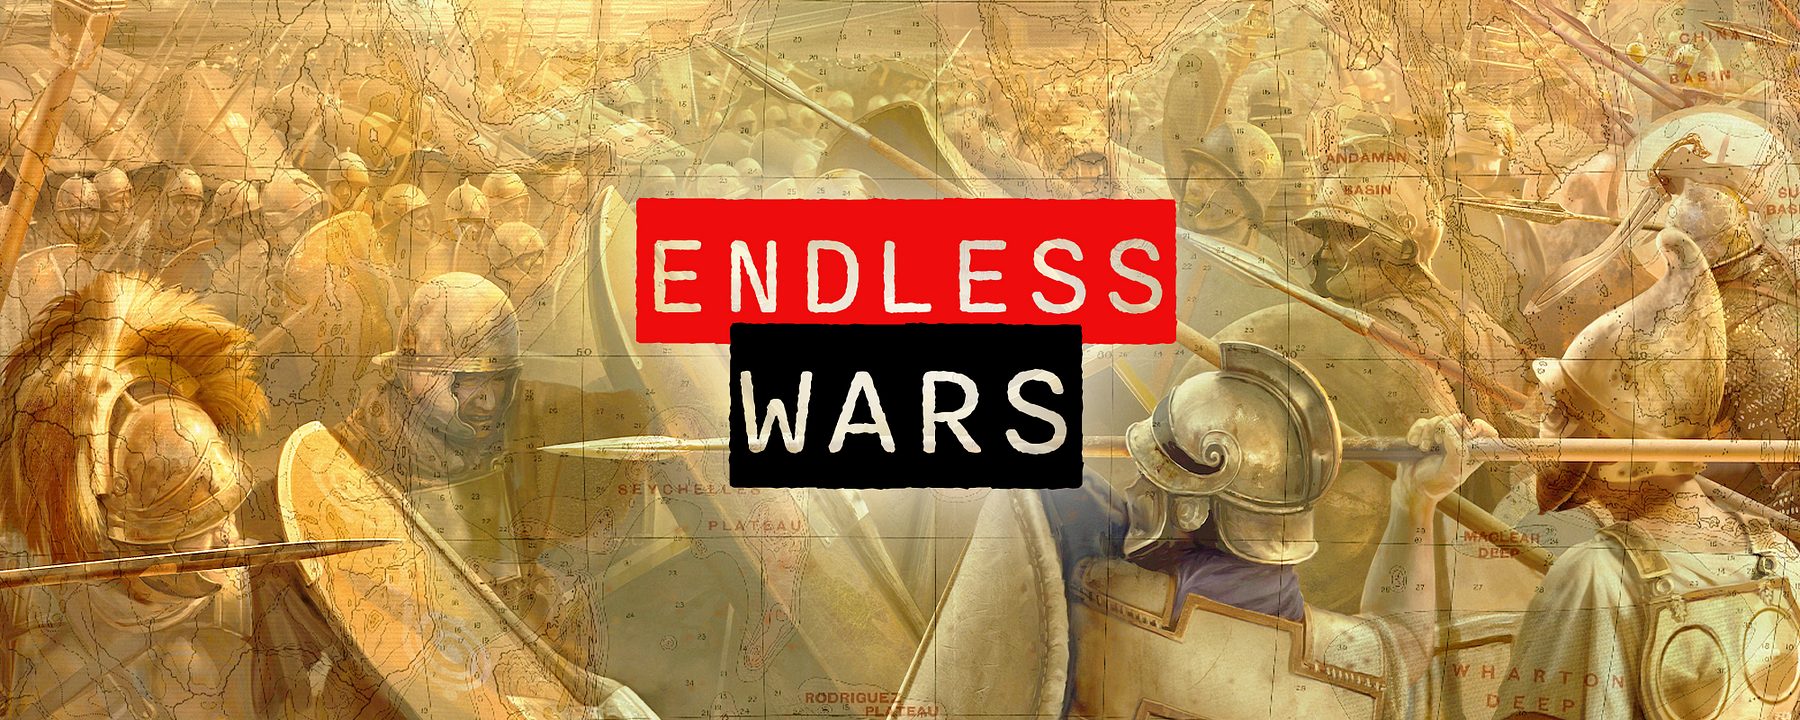 Endless Wars 2000x800